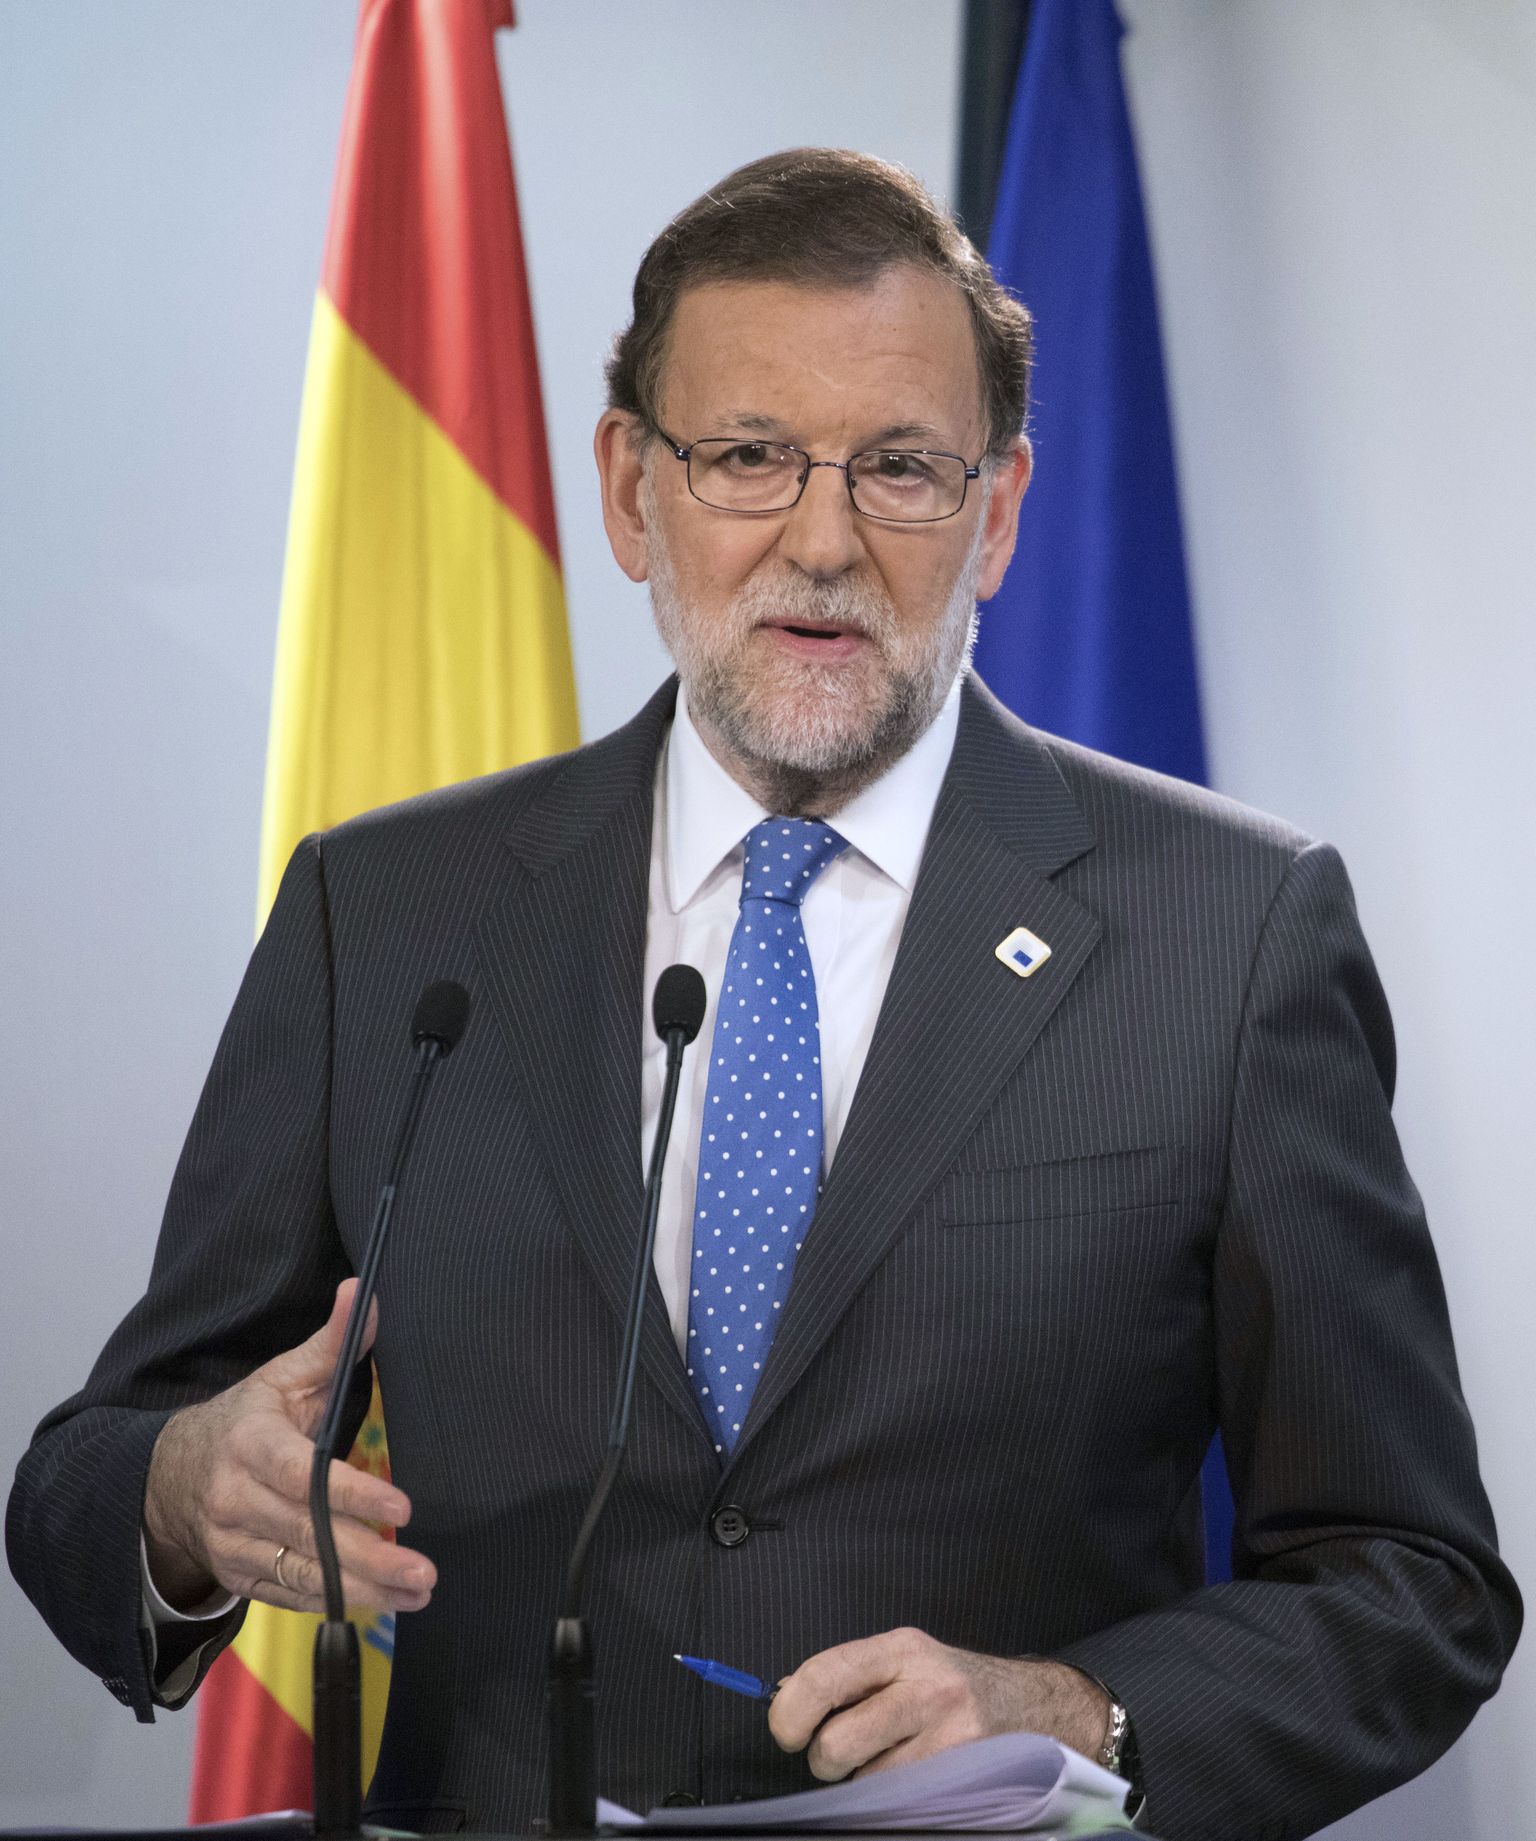 Mariano Rajoy saab tõenäoliselt peagi päriselt peaministriks – ilma tiitlita «kohusetäitja».